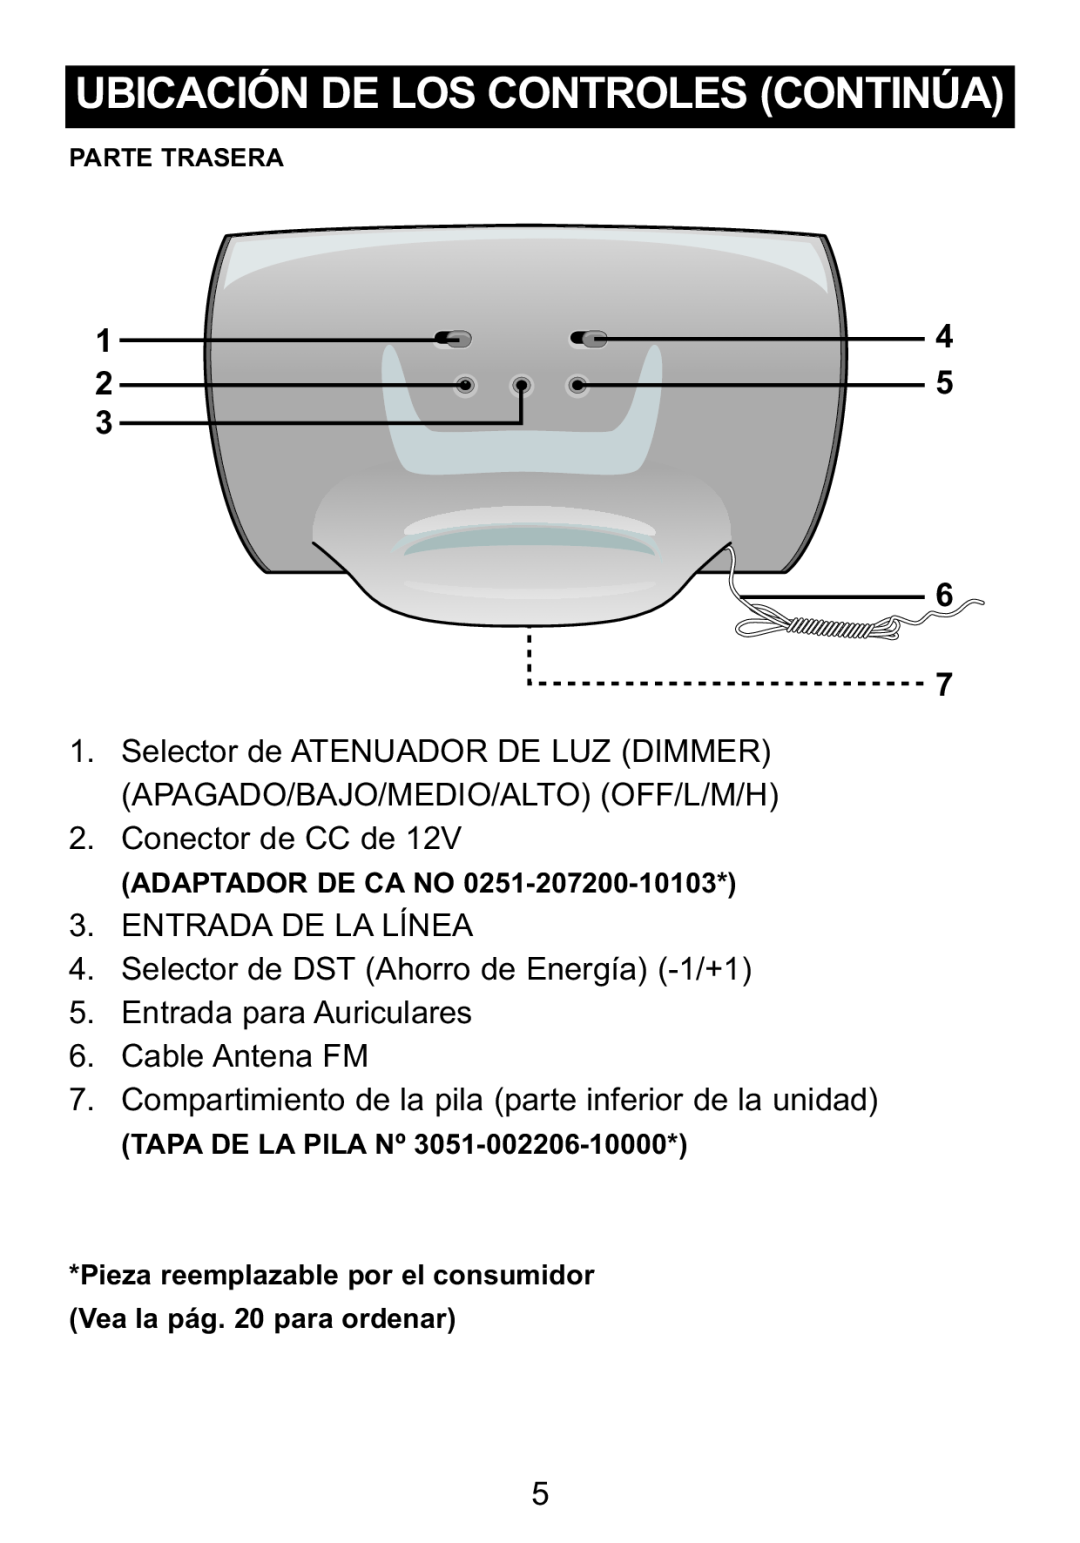 Memorex Mi4014 manual Conector de CC de, ENTRADA DE LA LÍNEA 4. Selector de DST Ahorro de Energía -1/+1, Adaptador De Ca No 